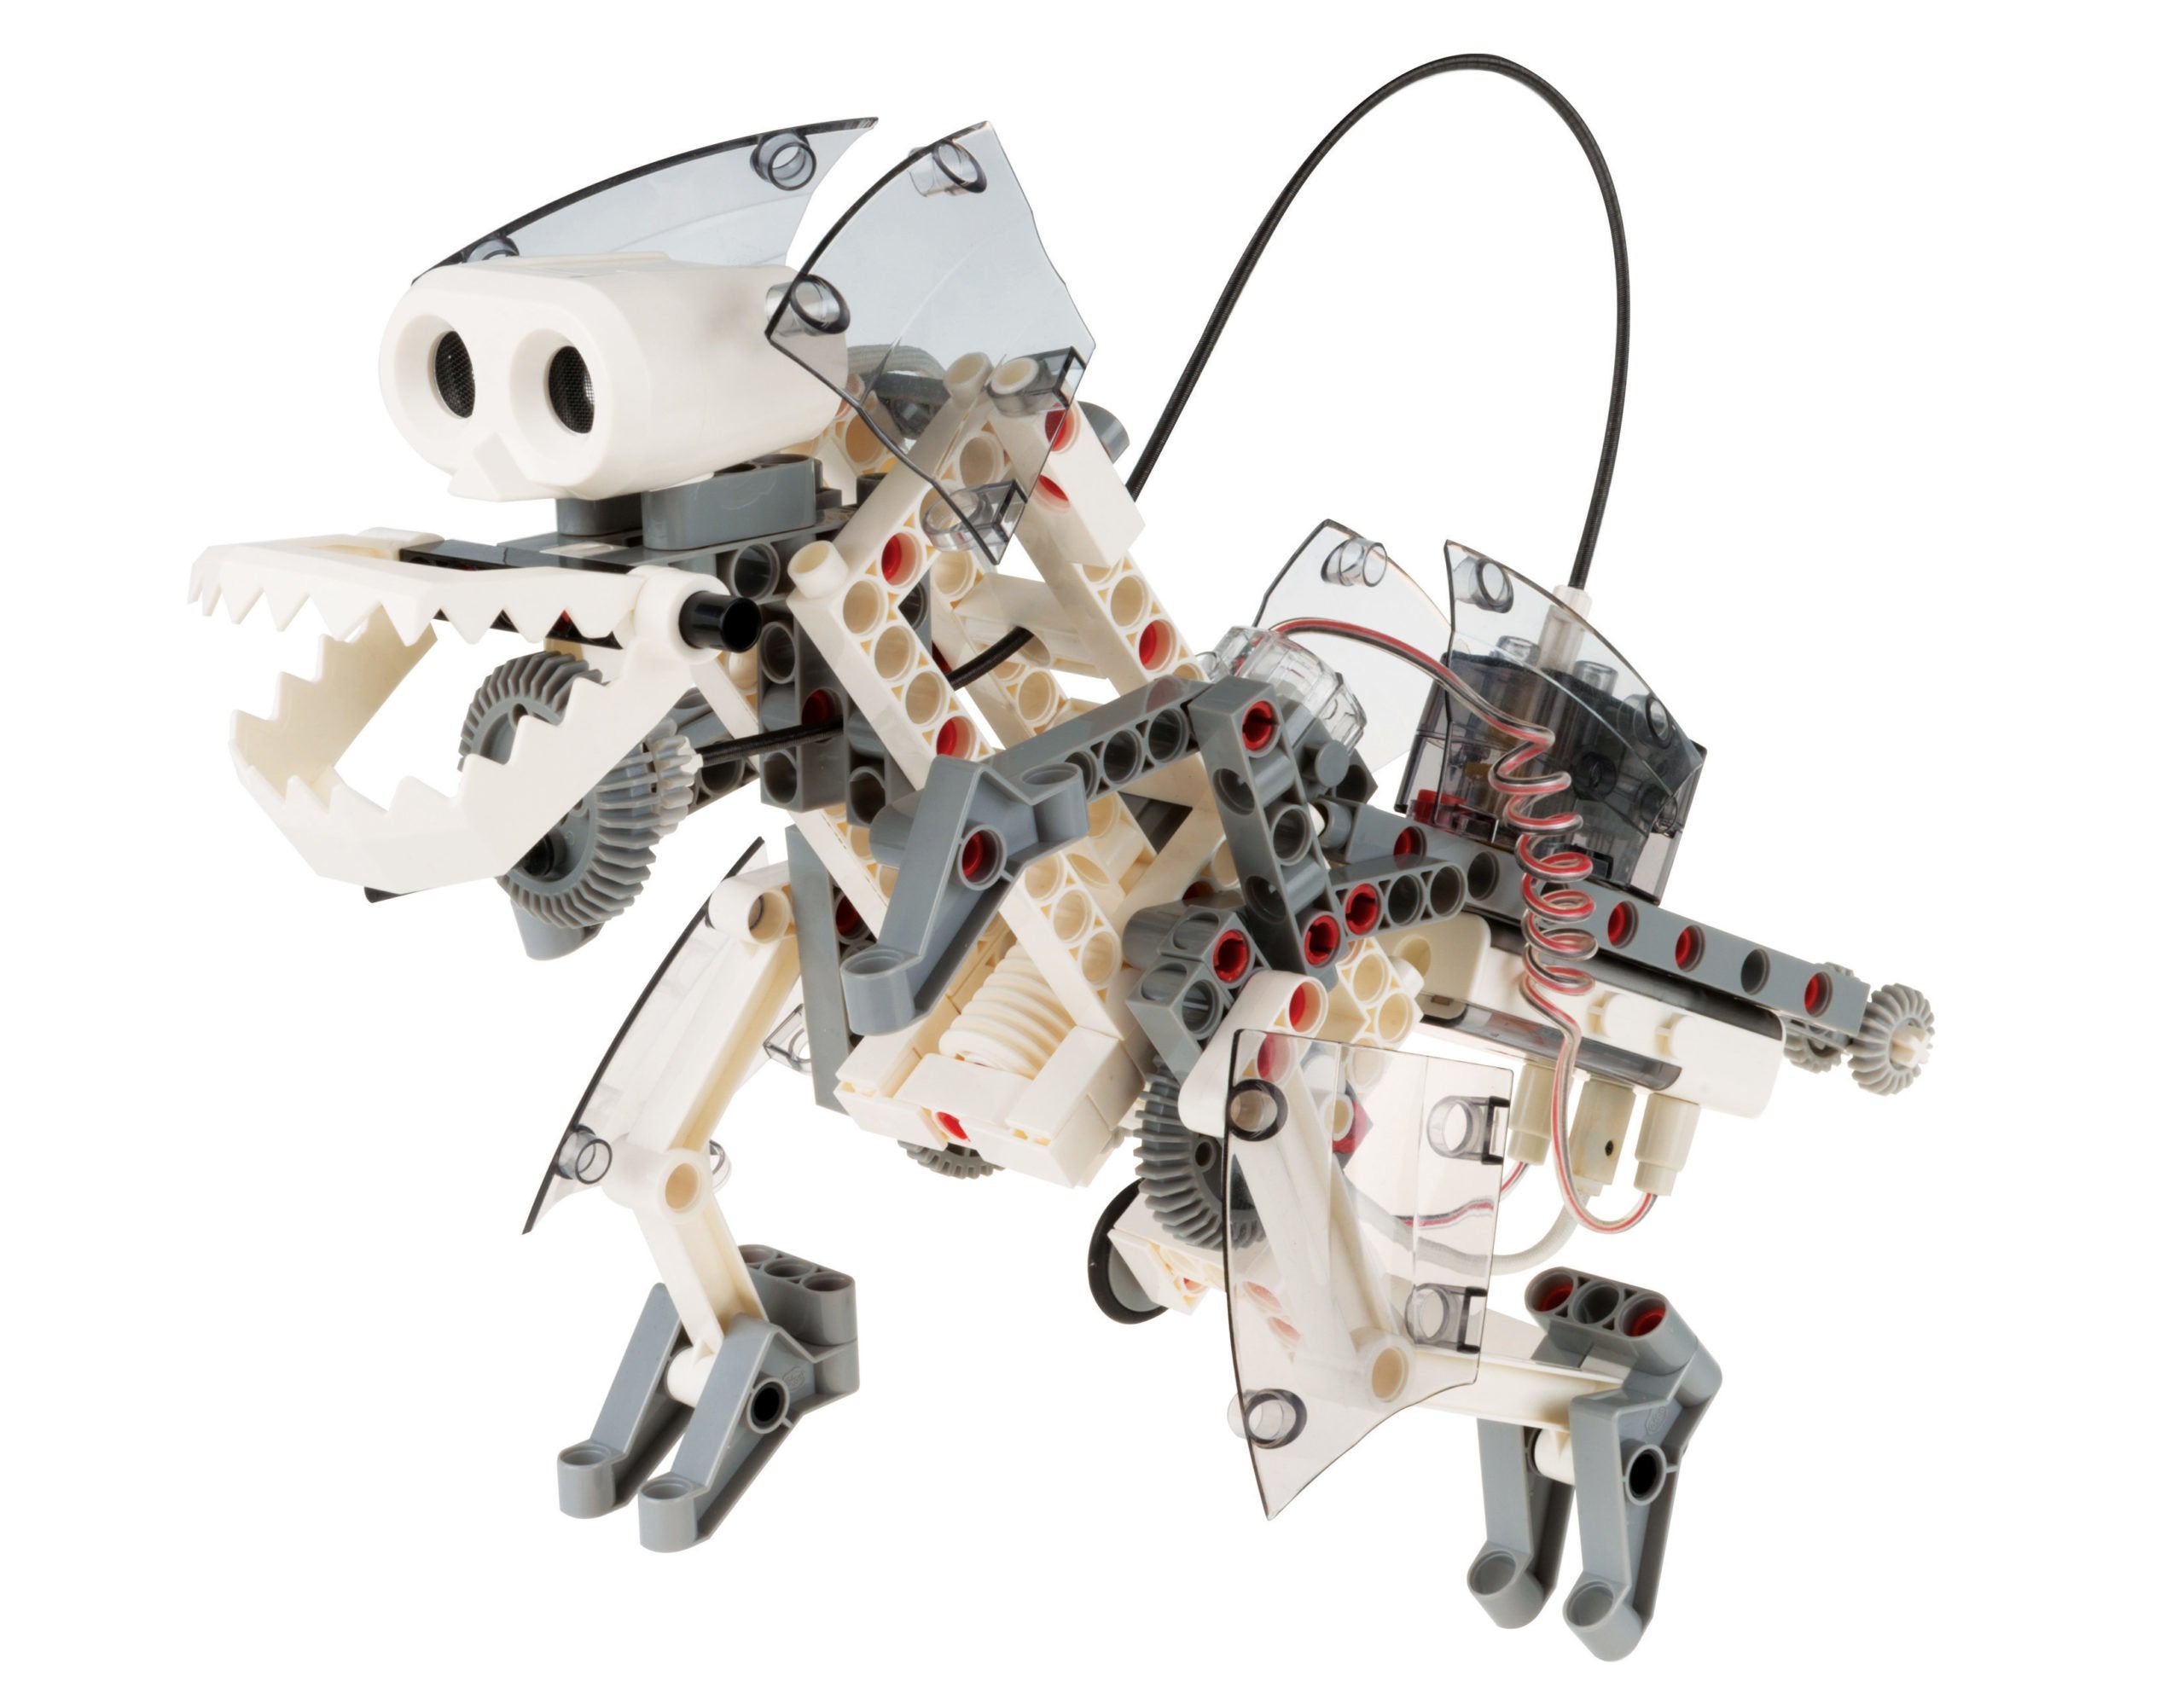 620375 SIGNATURE Robotics Smart Machines